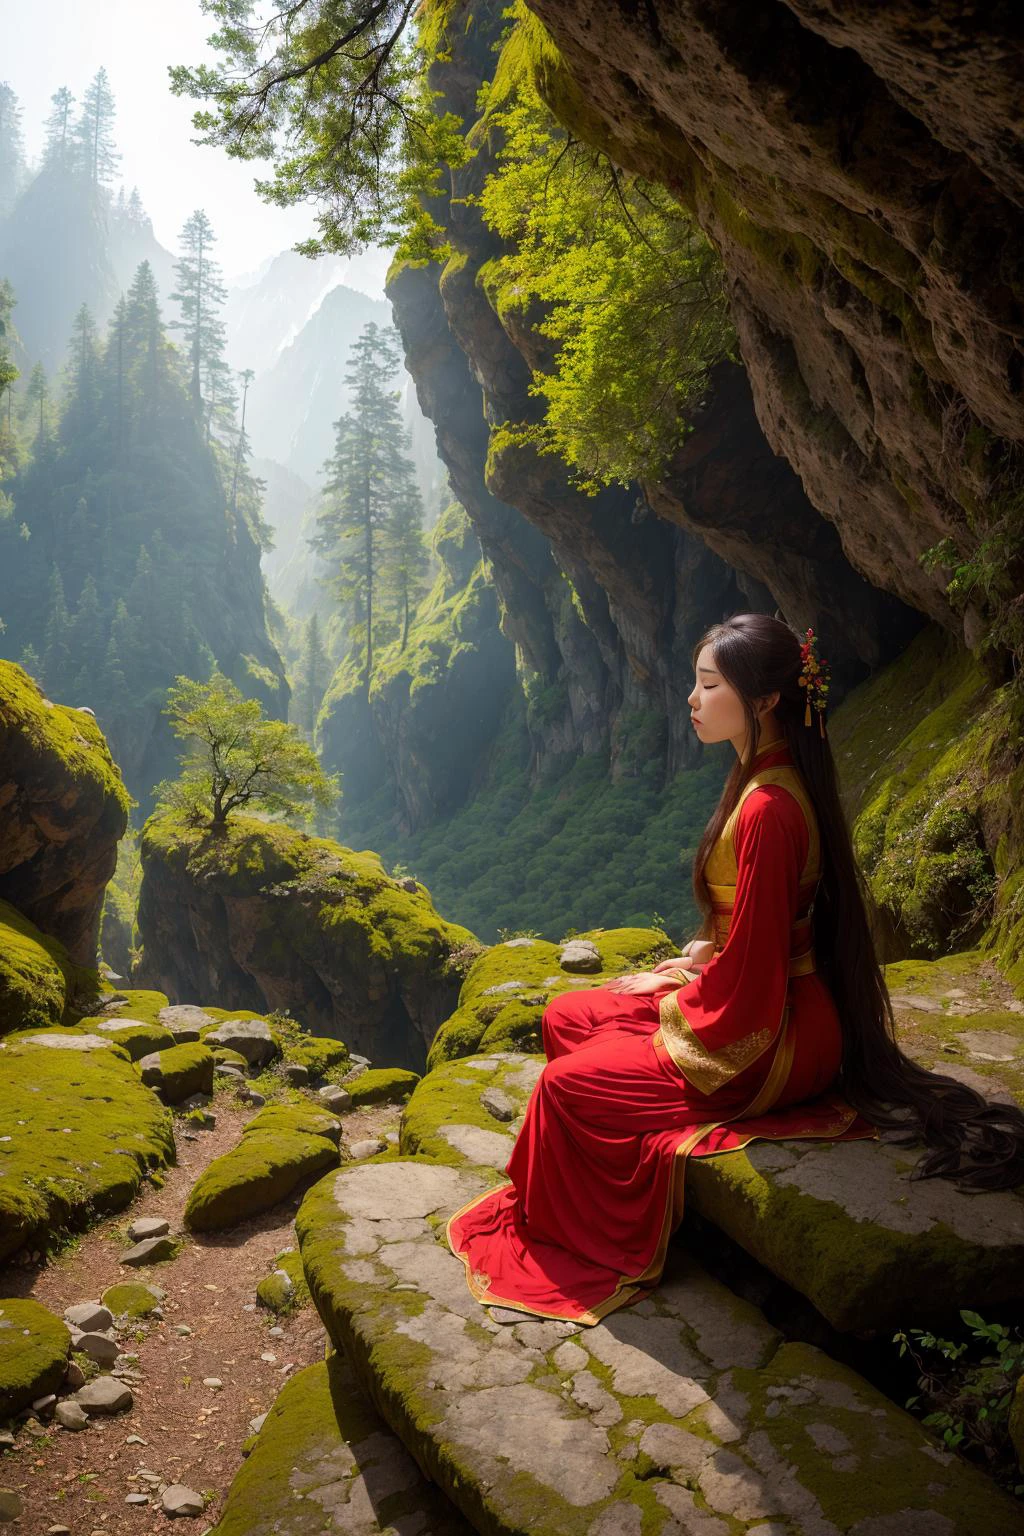 An einem Morgen in einer Berghöhle, Ein schönes Hanfu-Mädchen hält am Rand einer Klippe inne. Die Sonne scheint vom Berggipfel, wirft ein sanftes Licht in die Höhle. Die Wände sind mit Moos bedeckt, und der Boden ist mit Kiefernnadeln und kleinen Steinen bedeckt. In der Ferne, Berggipfel und Wälder sind durch den dunstigen Morgennebel schwach zu erkennen. Dies ist eine ruhige und heitere Szene,rotes Thema,
 HDR, (Fotorealismus, Meisterhafte Qualität, beste Qualität),